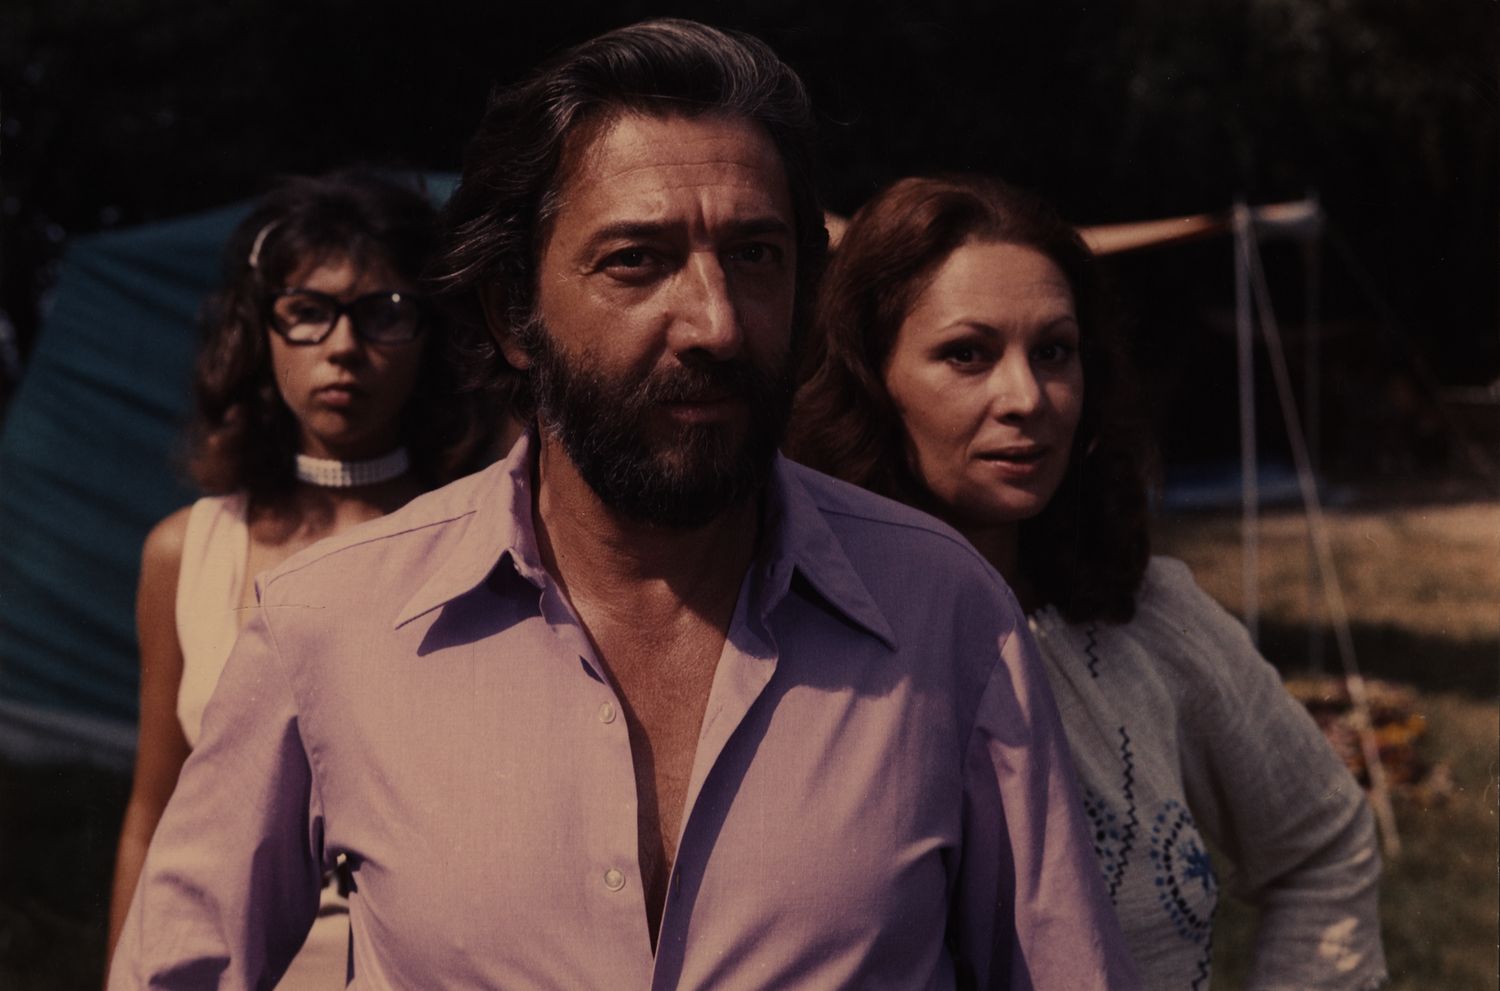 Holnap lesz fácán (1974) Screenshot 1 